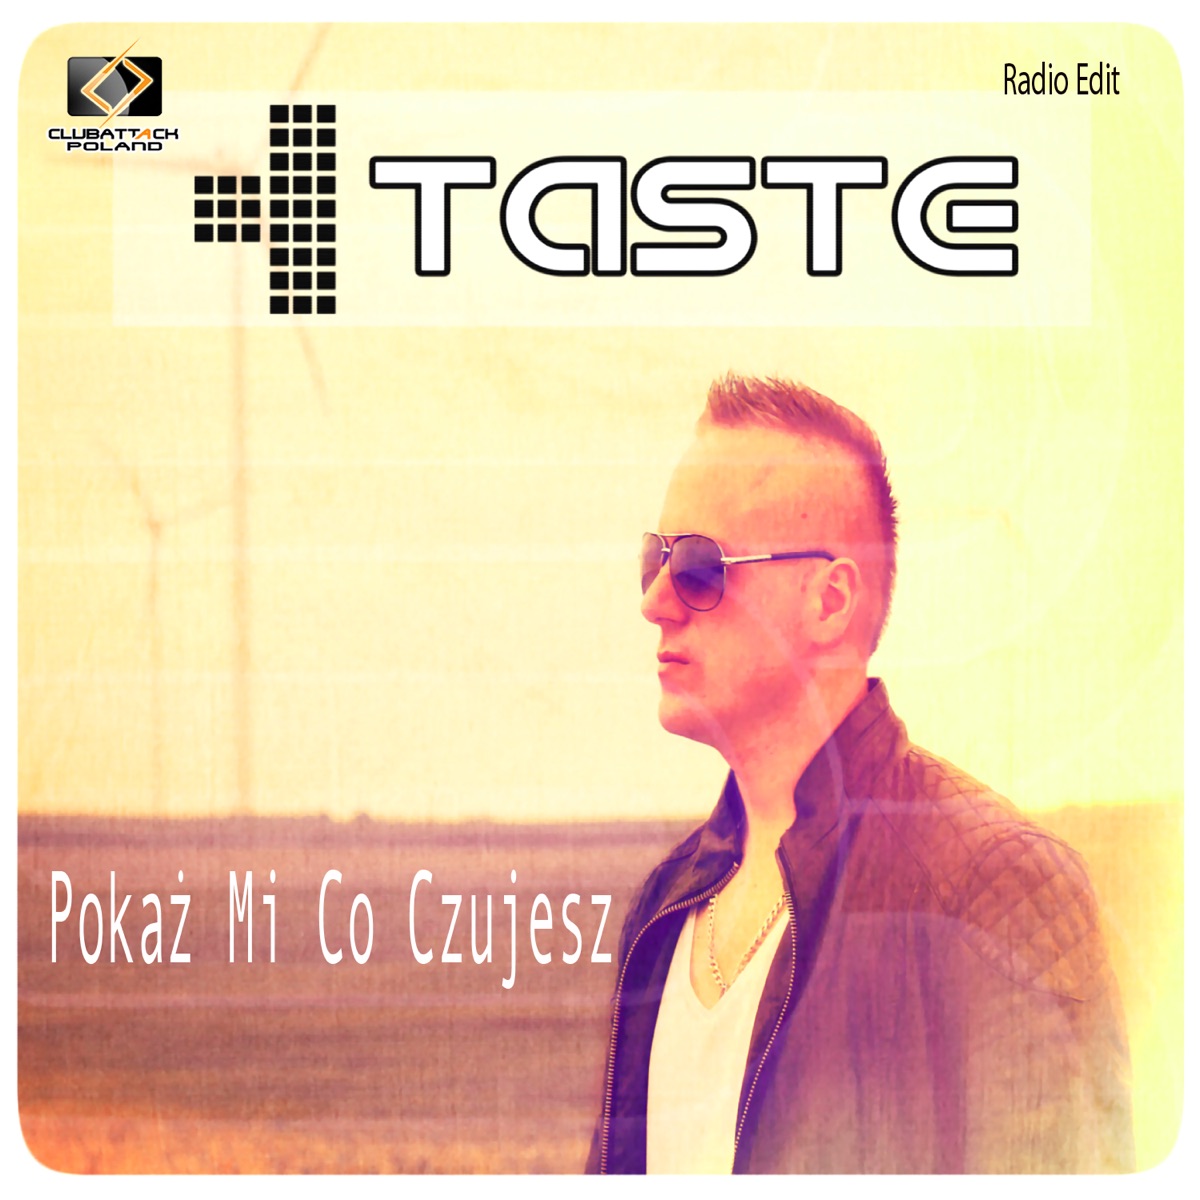 Pokaż Mi Co Czujesz (Radio Edit) - Single by Taste on Apple Music